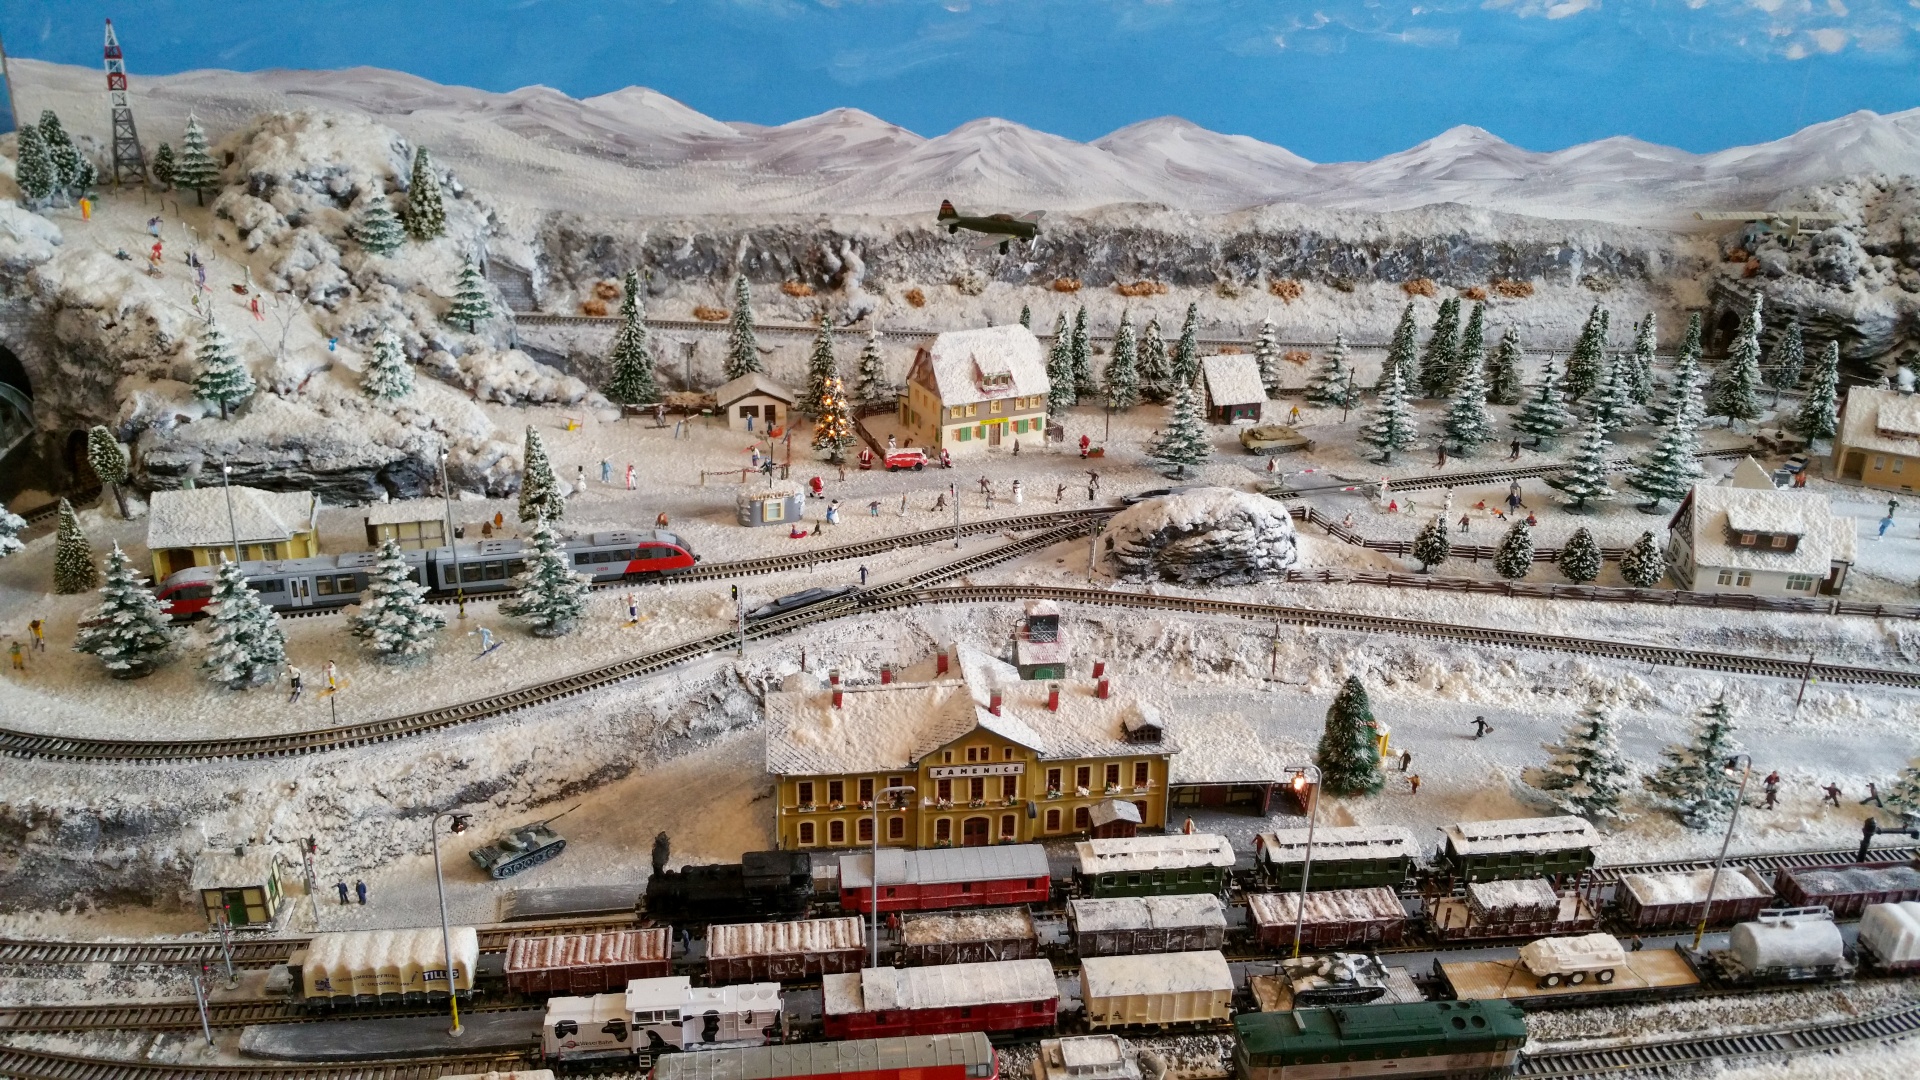 Miniature model railway in winter